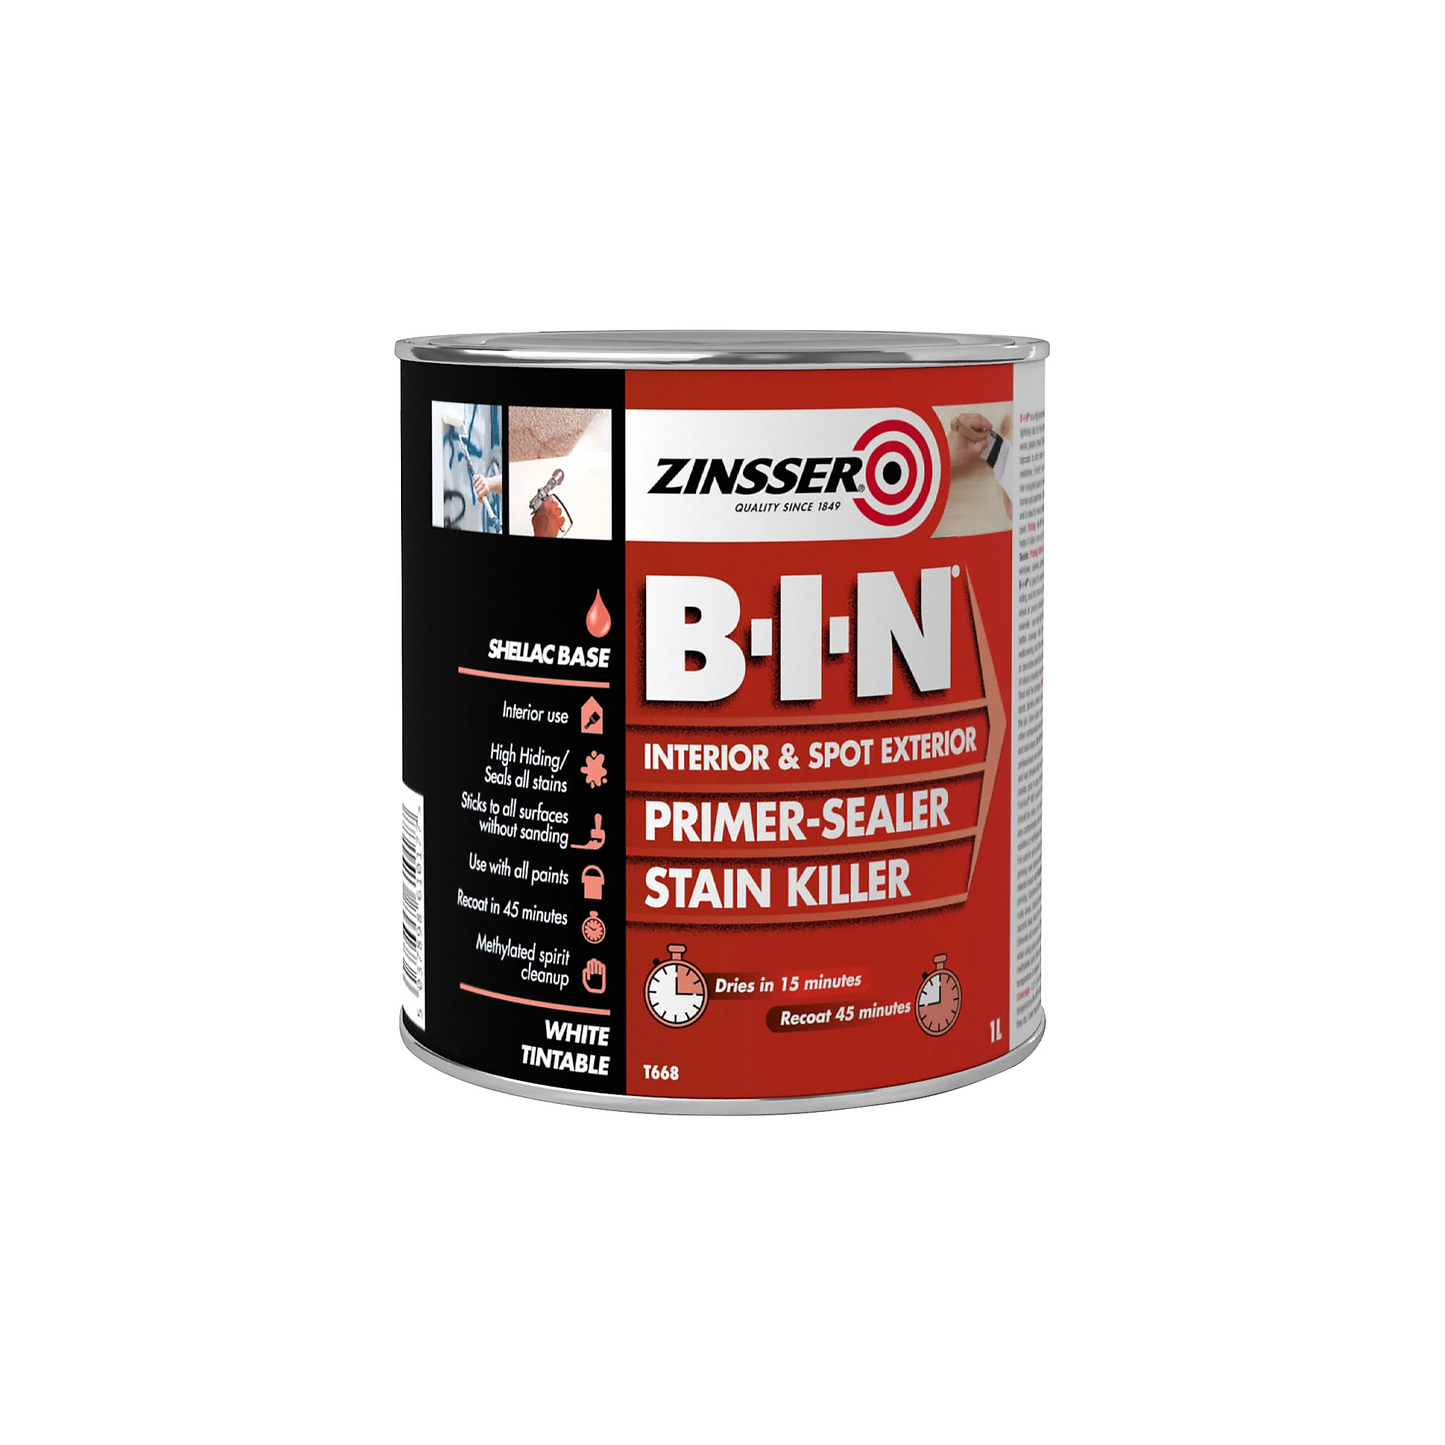 Zinsser B-I-N Multi-Surface Primer Sealer Stain Killer